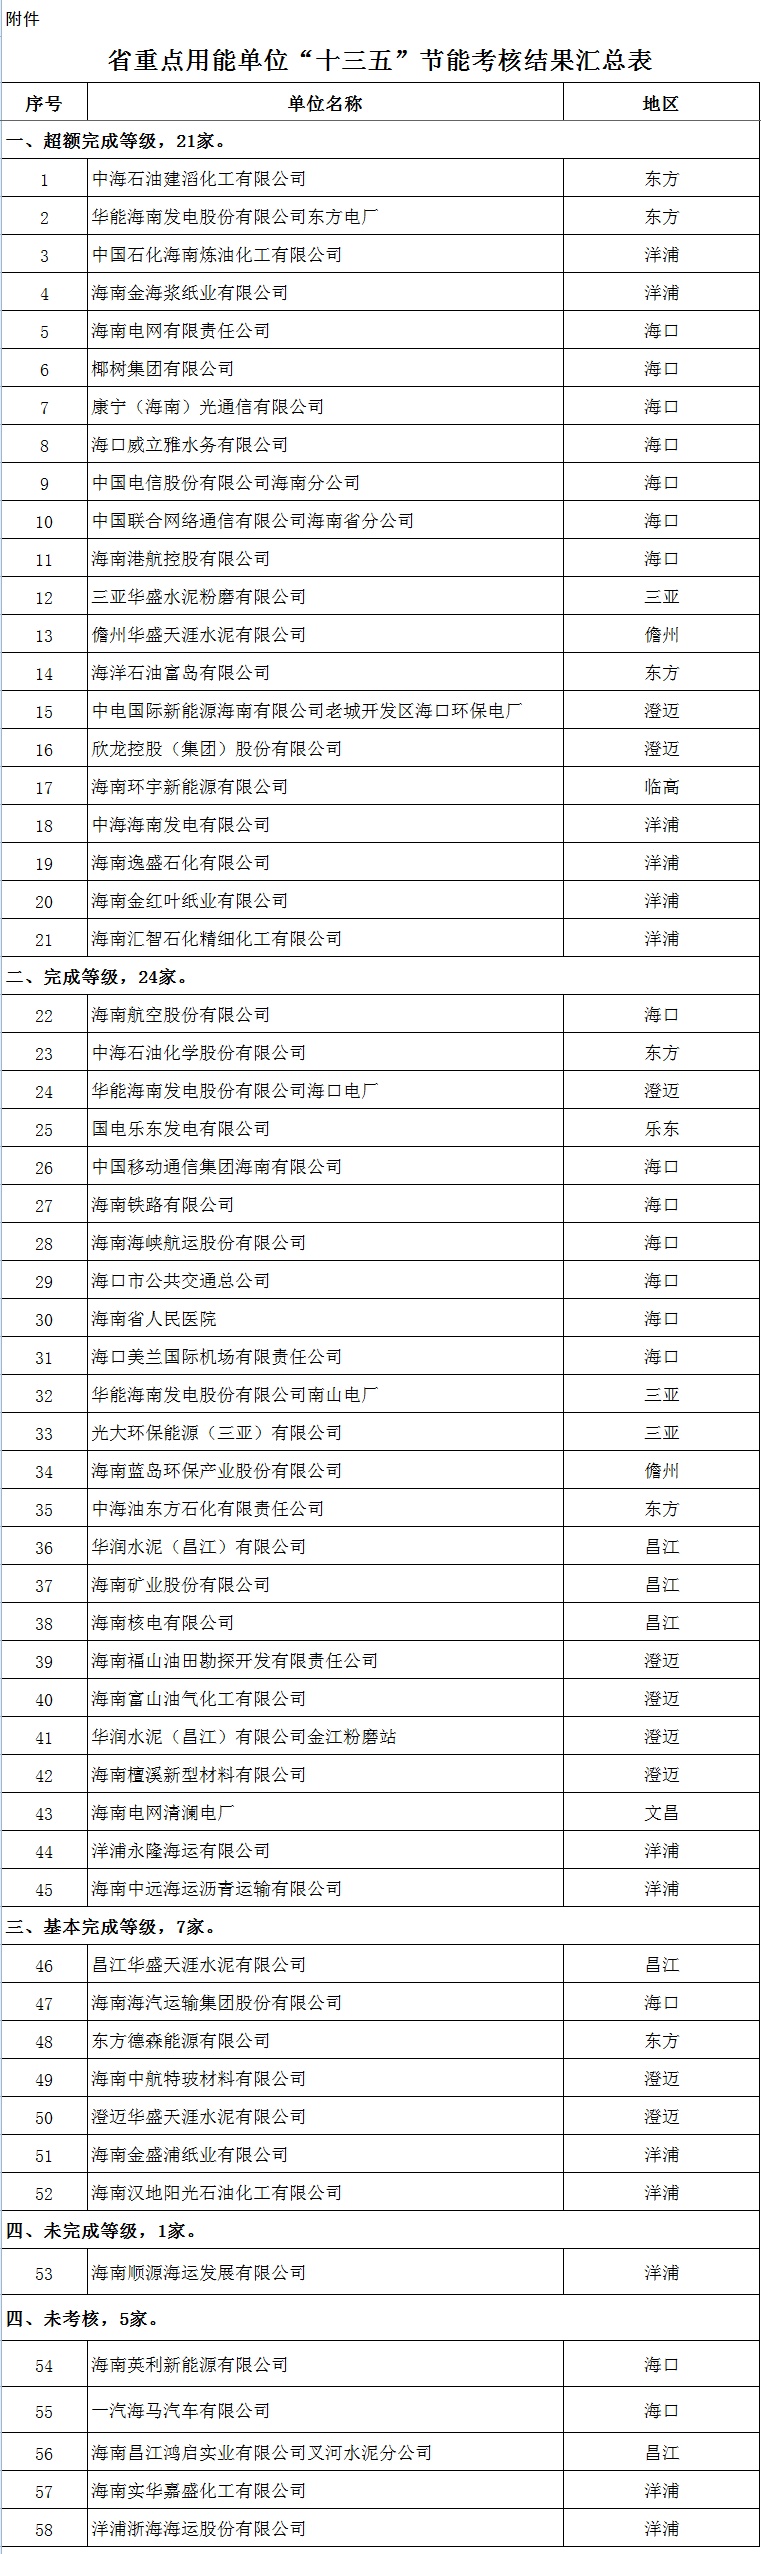 金海浆纸超额完成海南省“十三五”期间节能目标获全省通报表扬